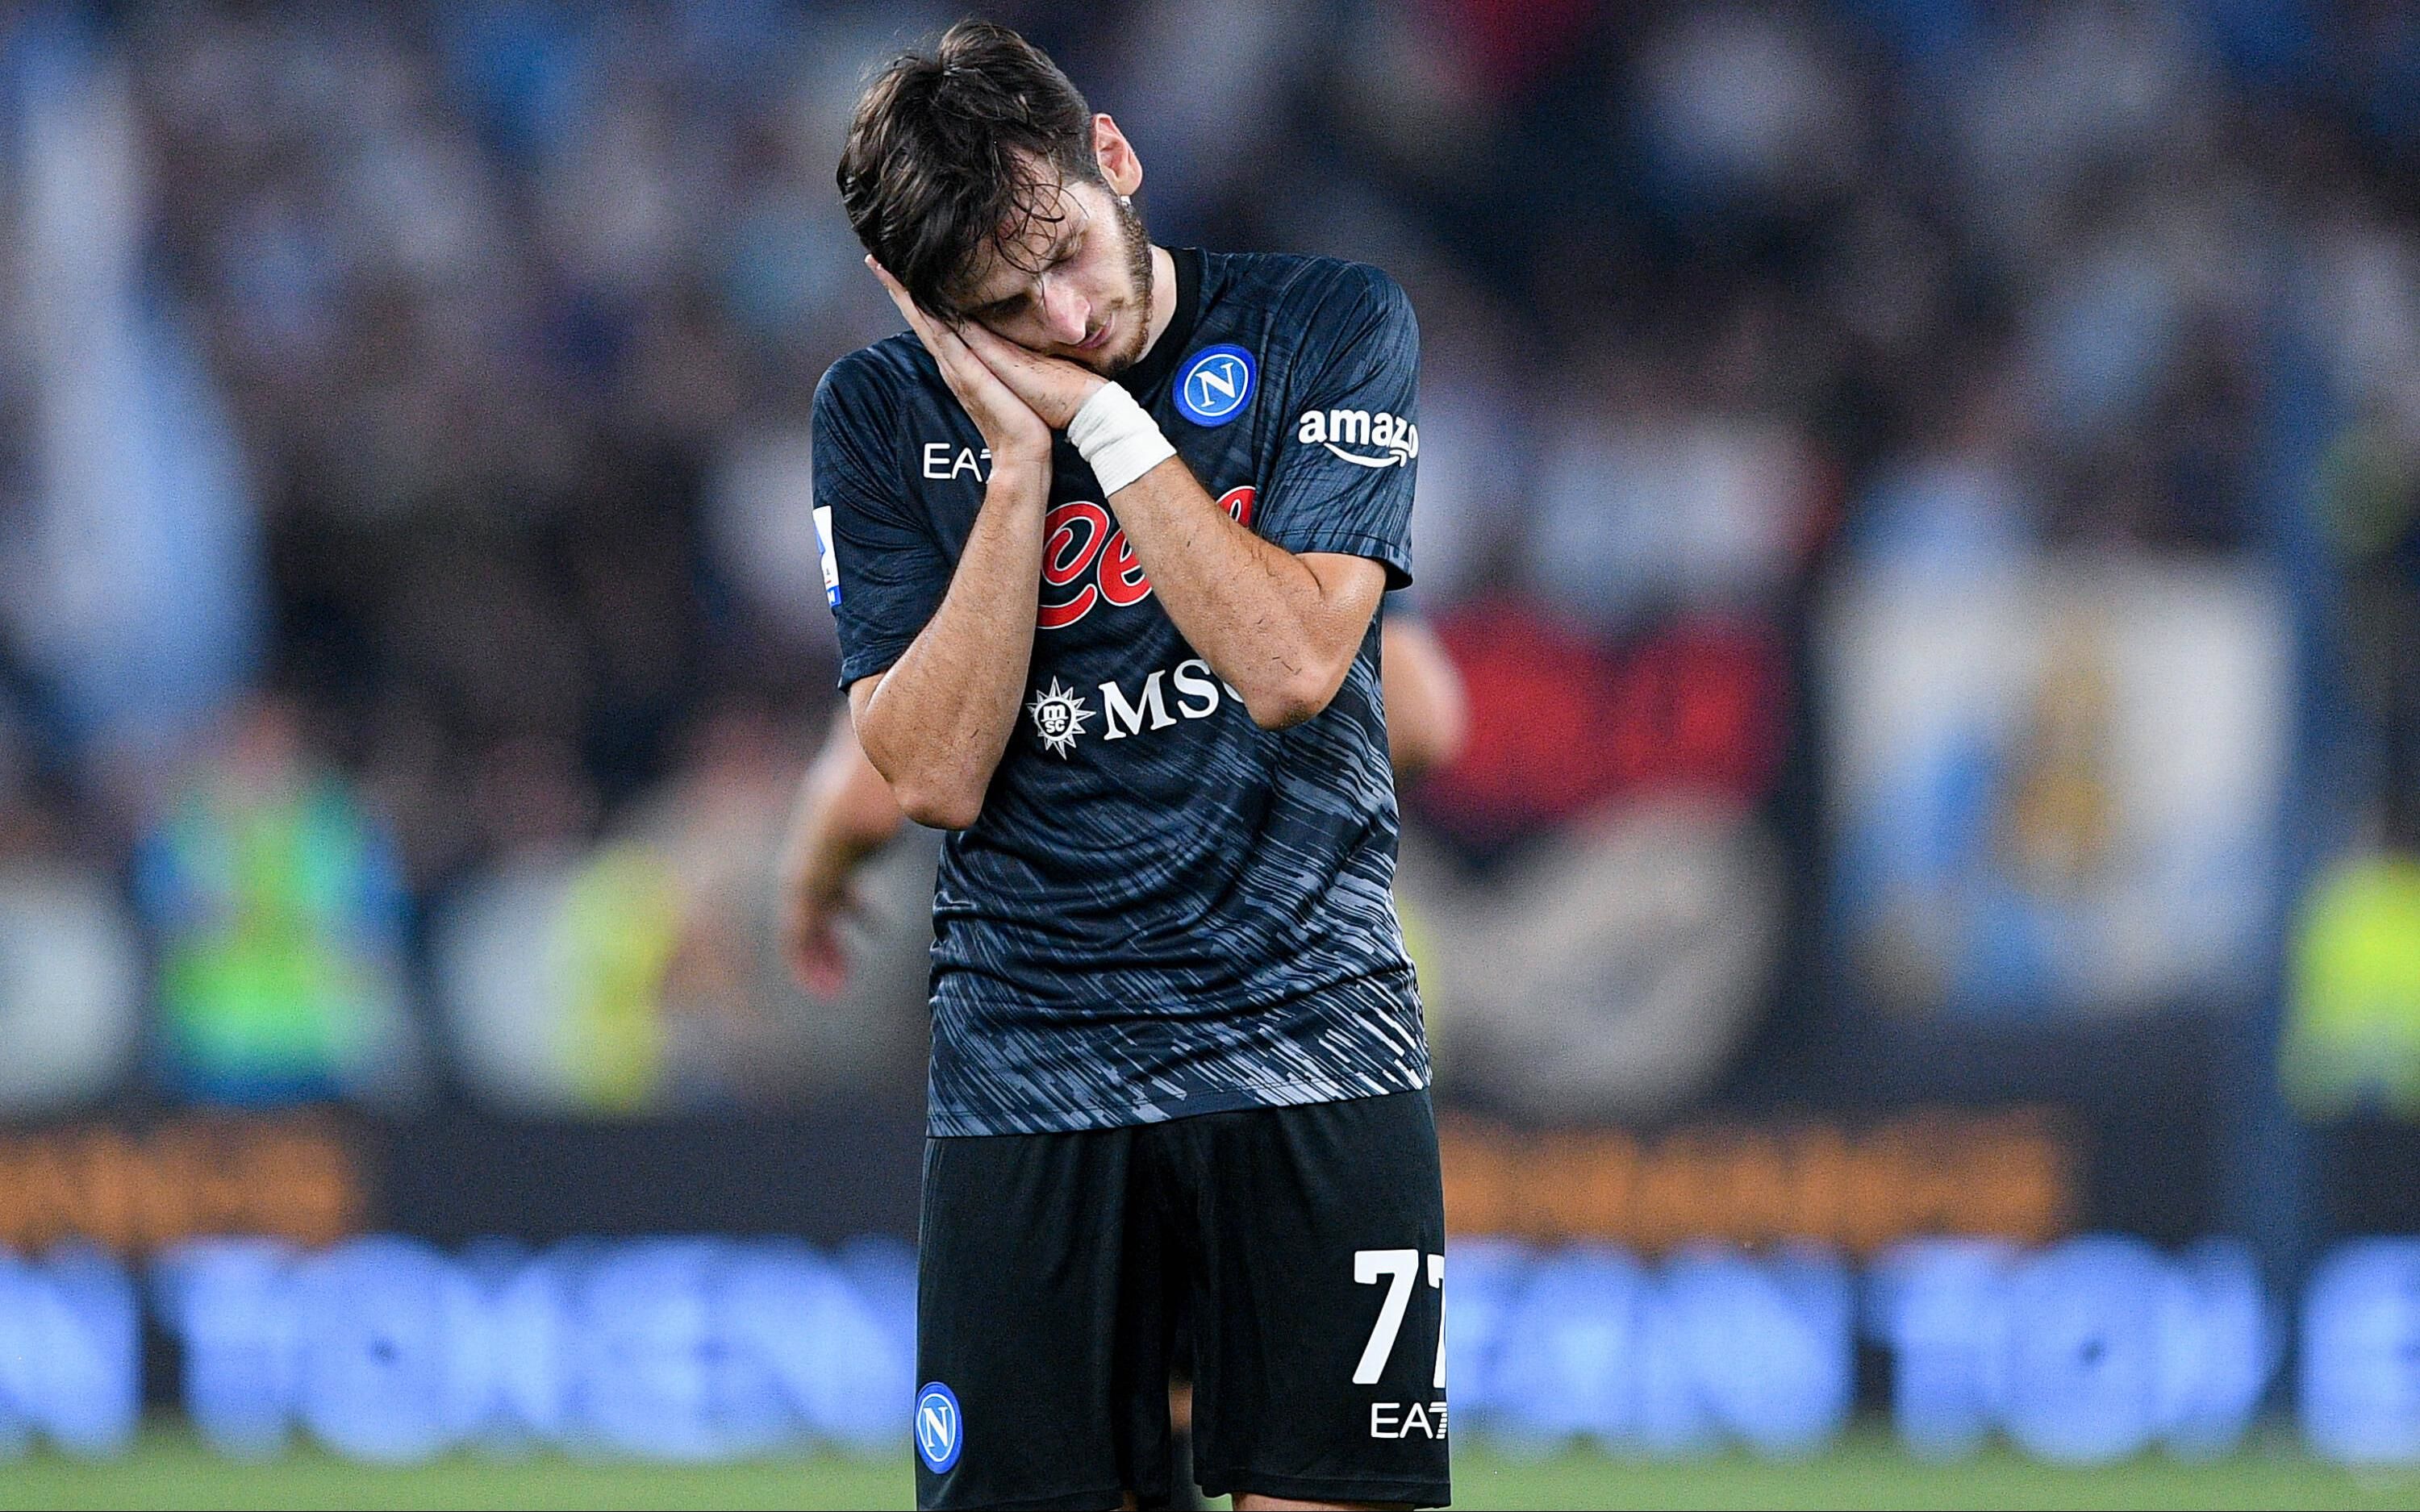 Kvaratskhelia will miss Napoli's match against Atalanta due to injury